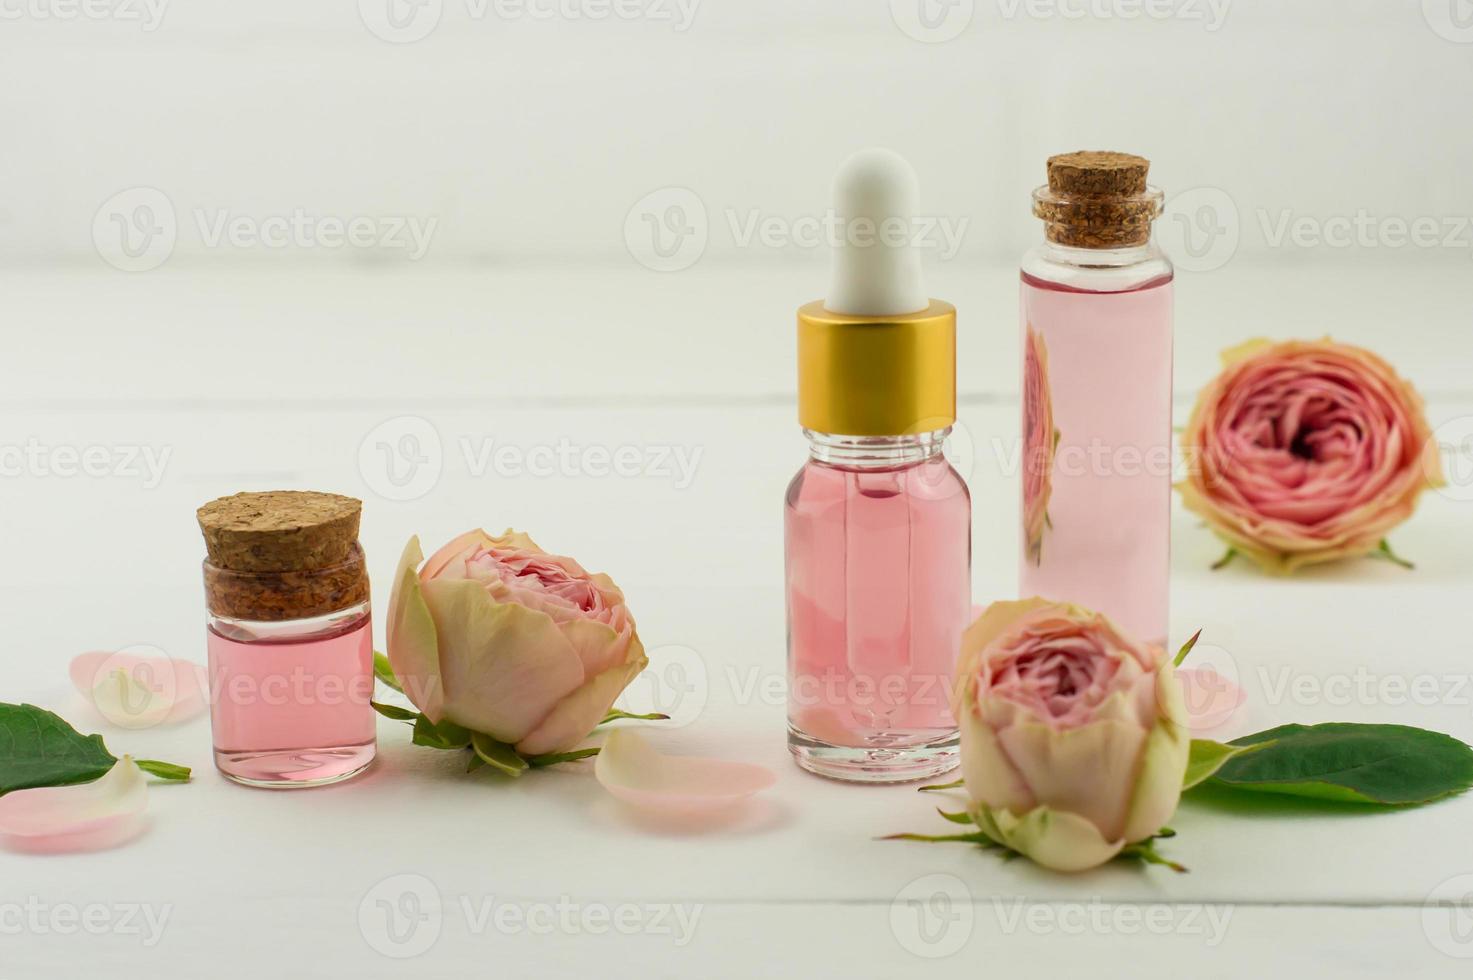 aceite facial de belleza hecho de flores de rosa sobre fondo blanco de madera con flores frescas. cuidado de la piel tratamiento facial y corporal. aromaterapia foto